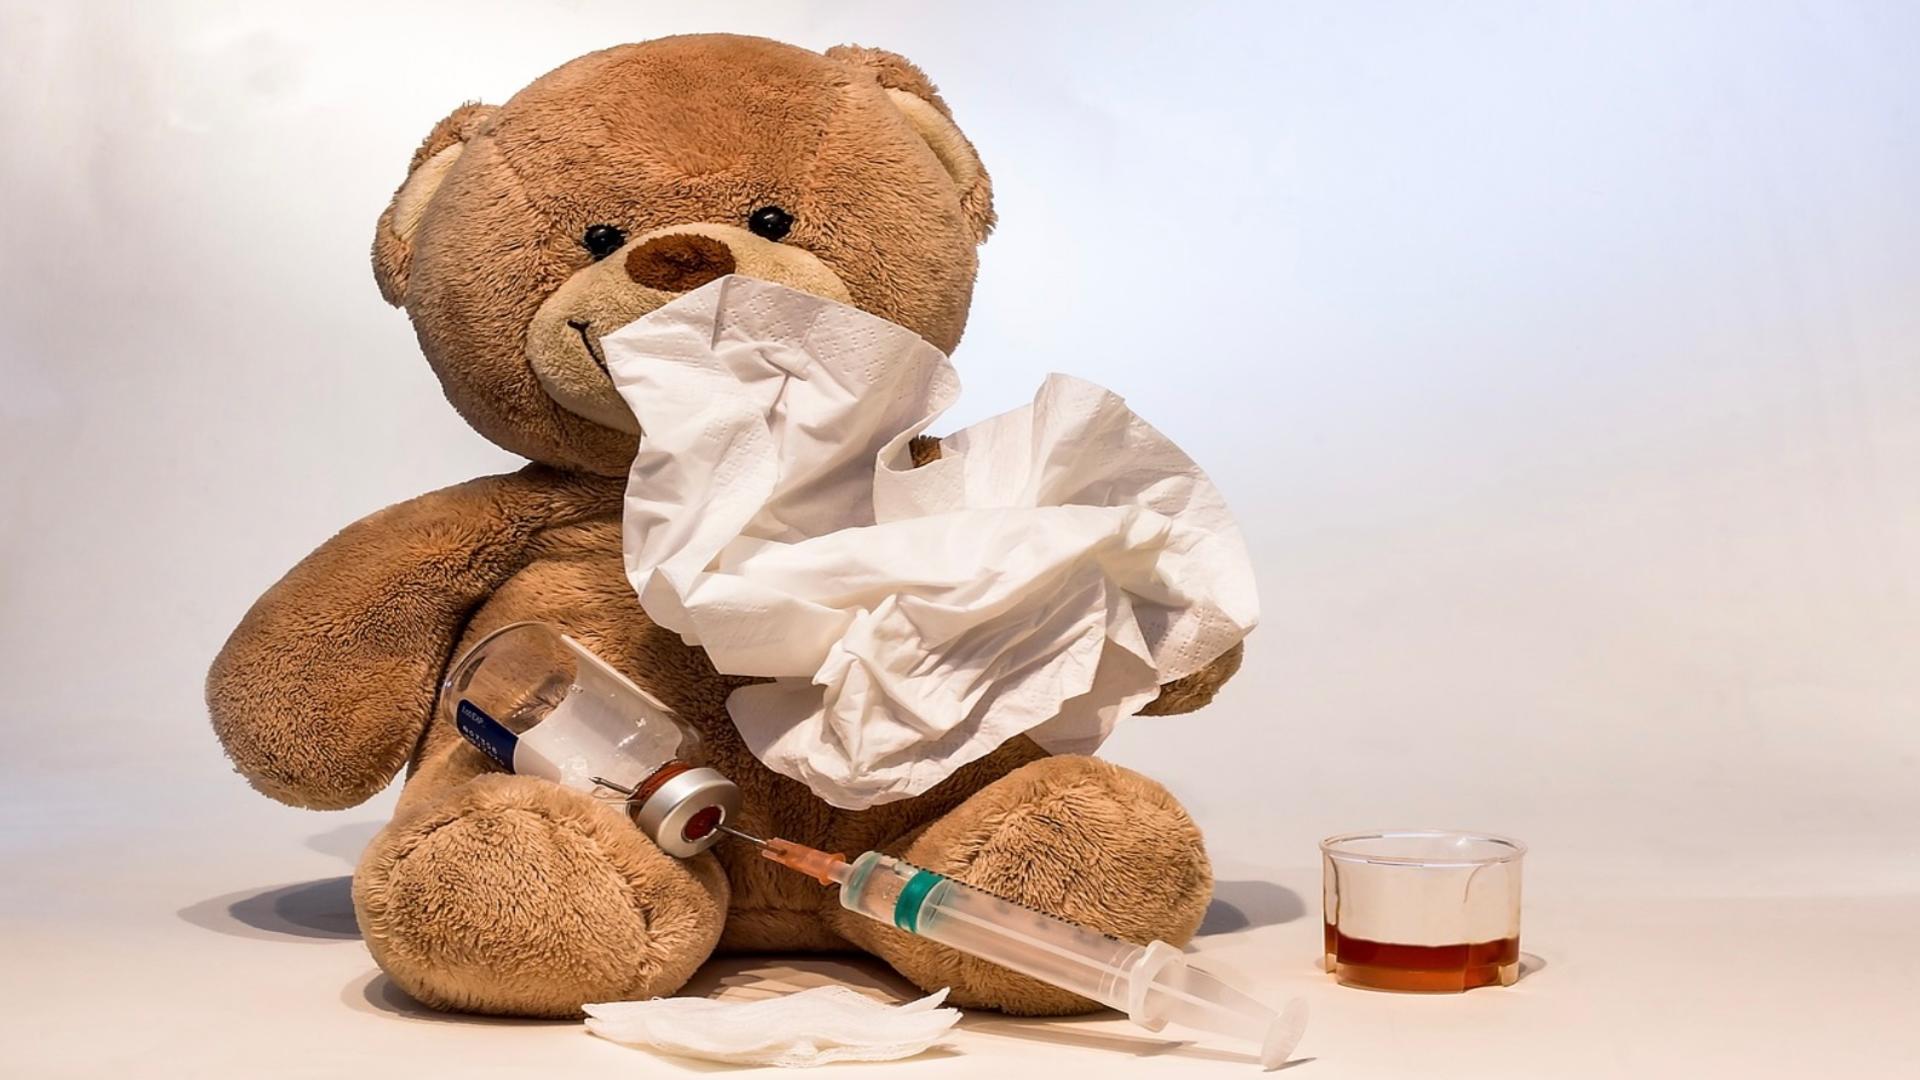 Val de infecții respiratorii și scarlatină, în spitalele de copii: sute de pacienți zilnic. Medicii cer ajutorul Poliției